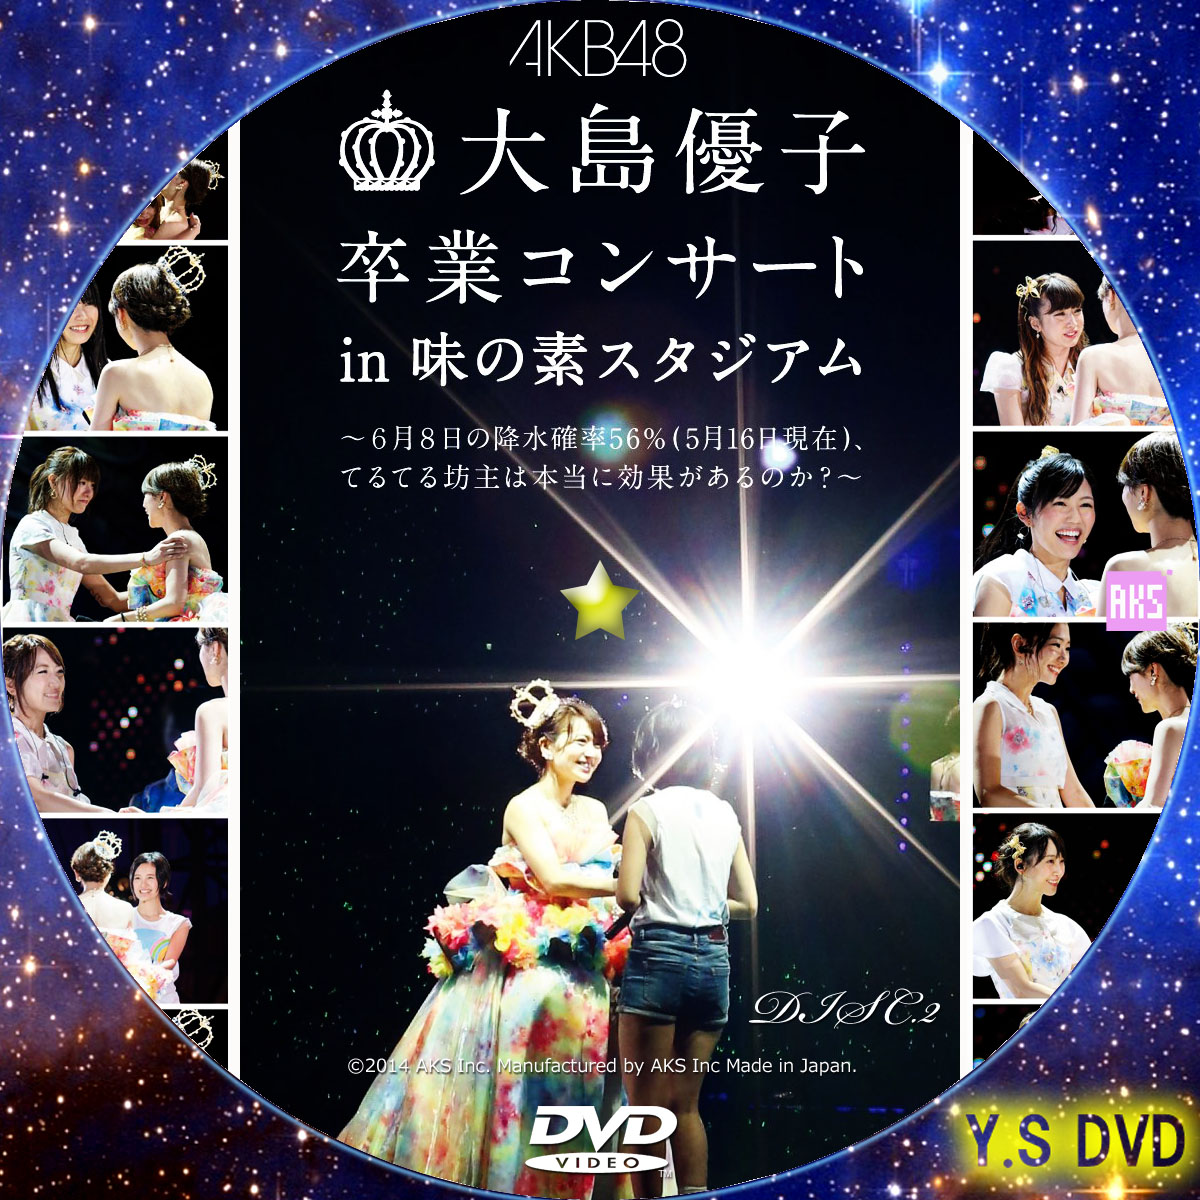 大島優子卒業コンサートDVD とDOCUMENTARY of AKB48 DVD